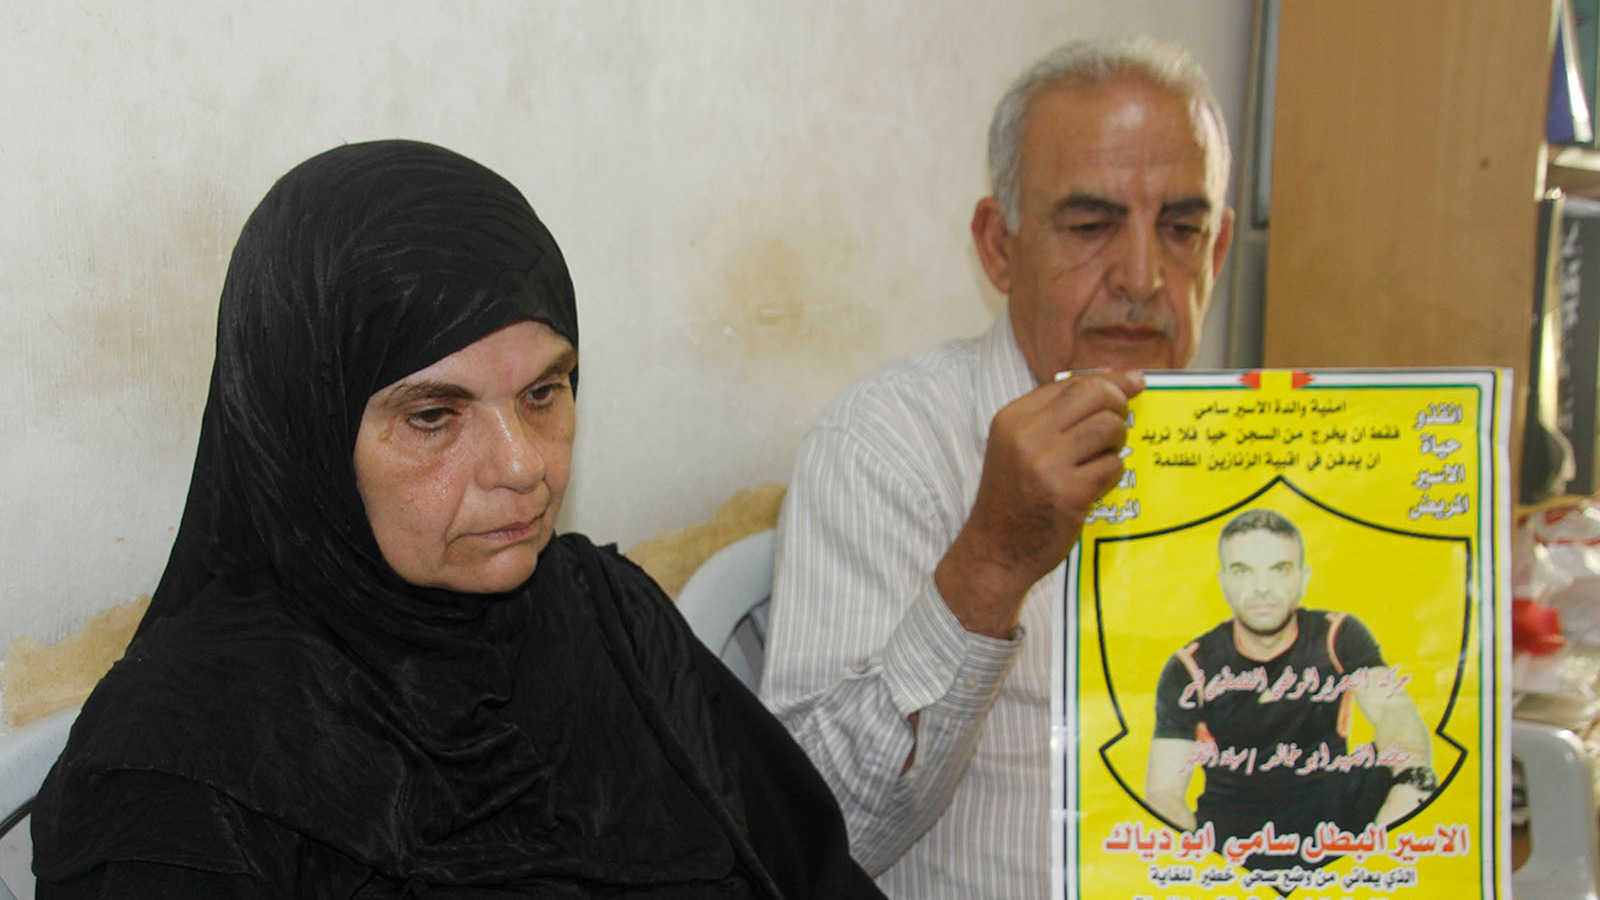 والد الأسير سامي أبو دياك ووالدته يحملان وصوره ويتوقعان استشهاده بأي لحظة  (الجزيرة)